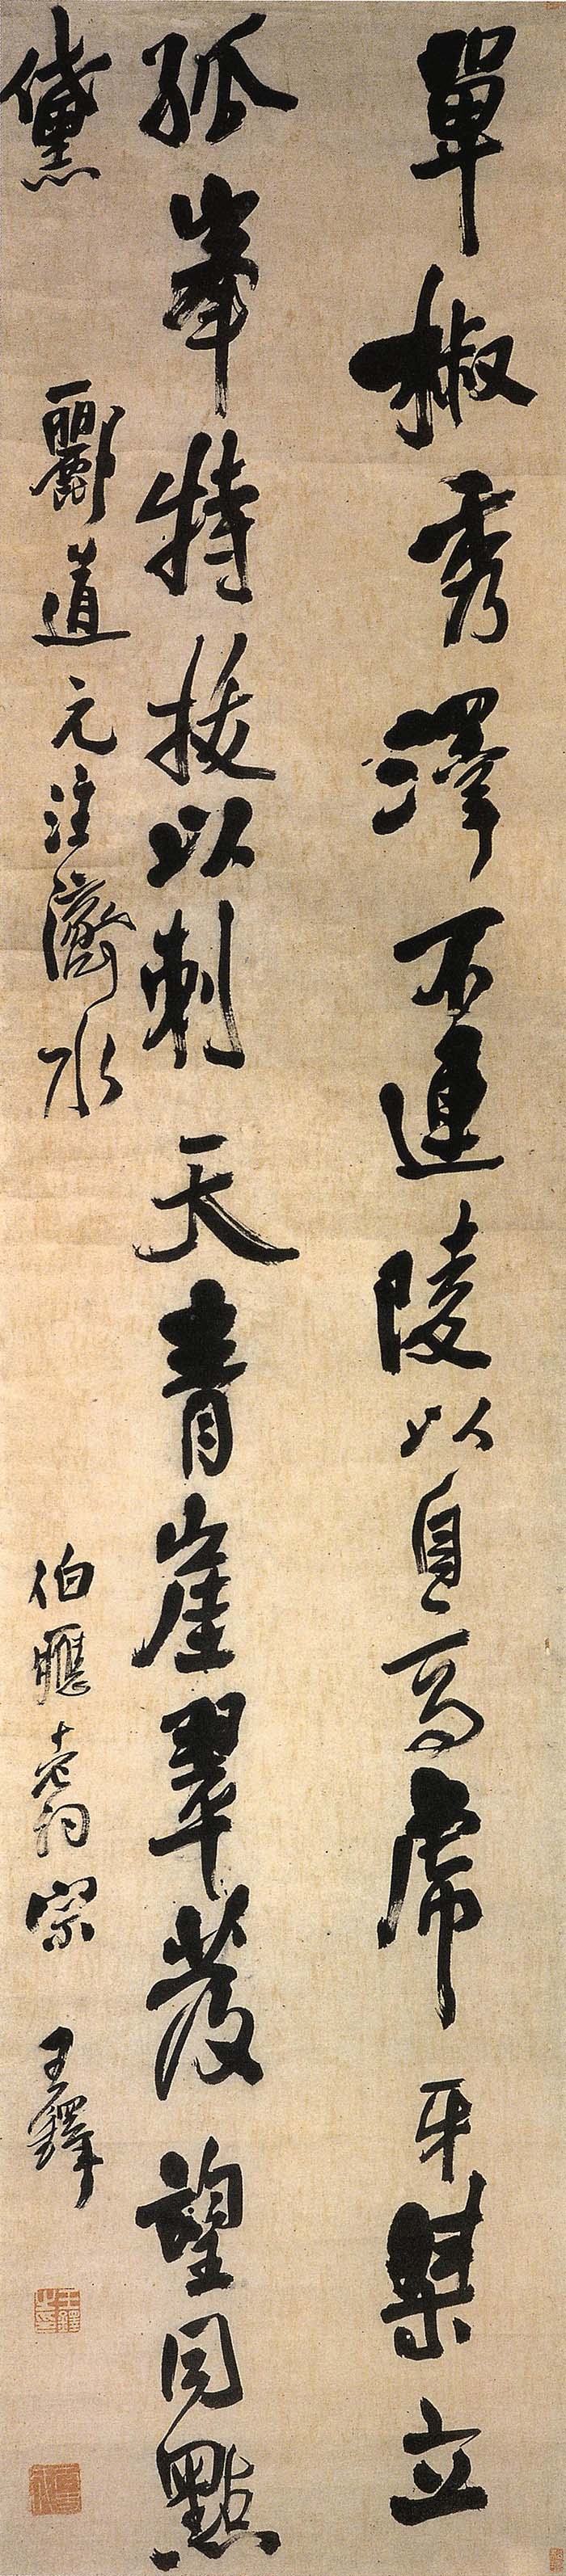 王铎 《单椒秀泽轴》-首都博物馆藏(图1)